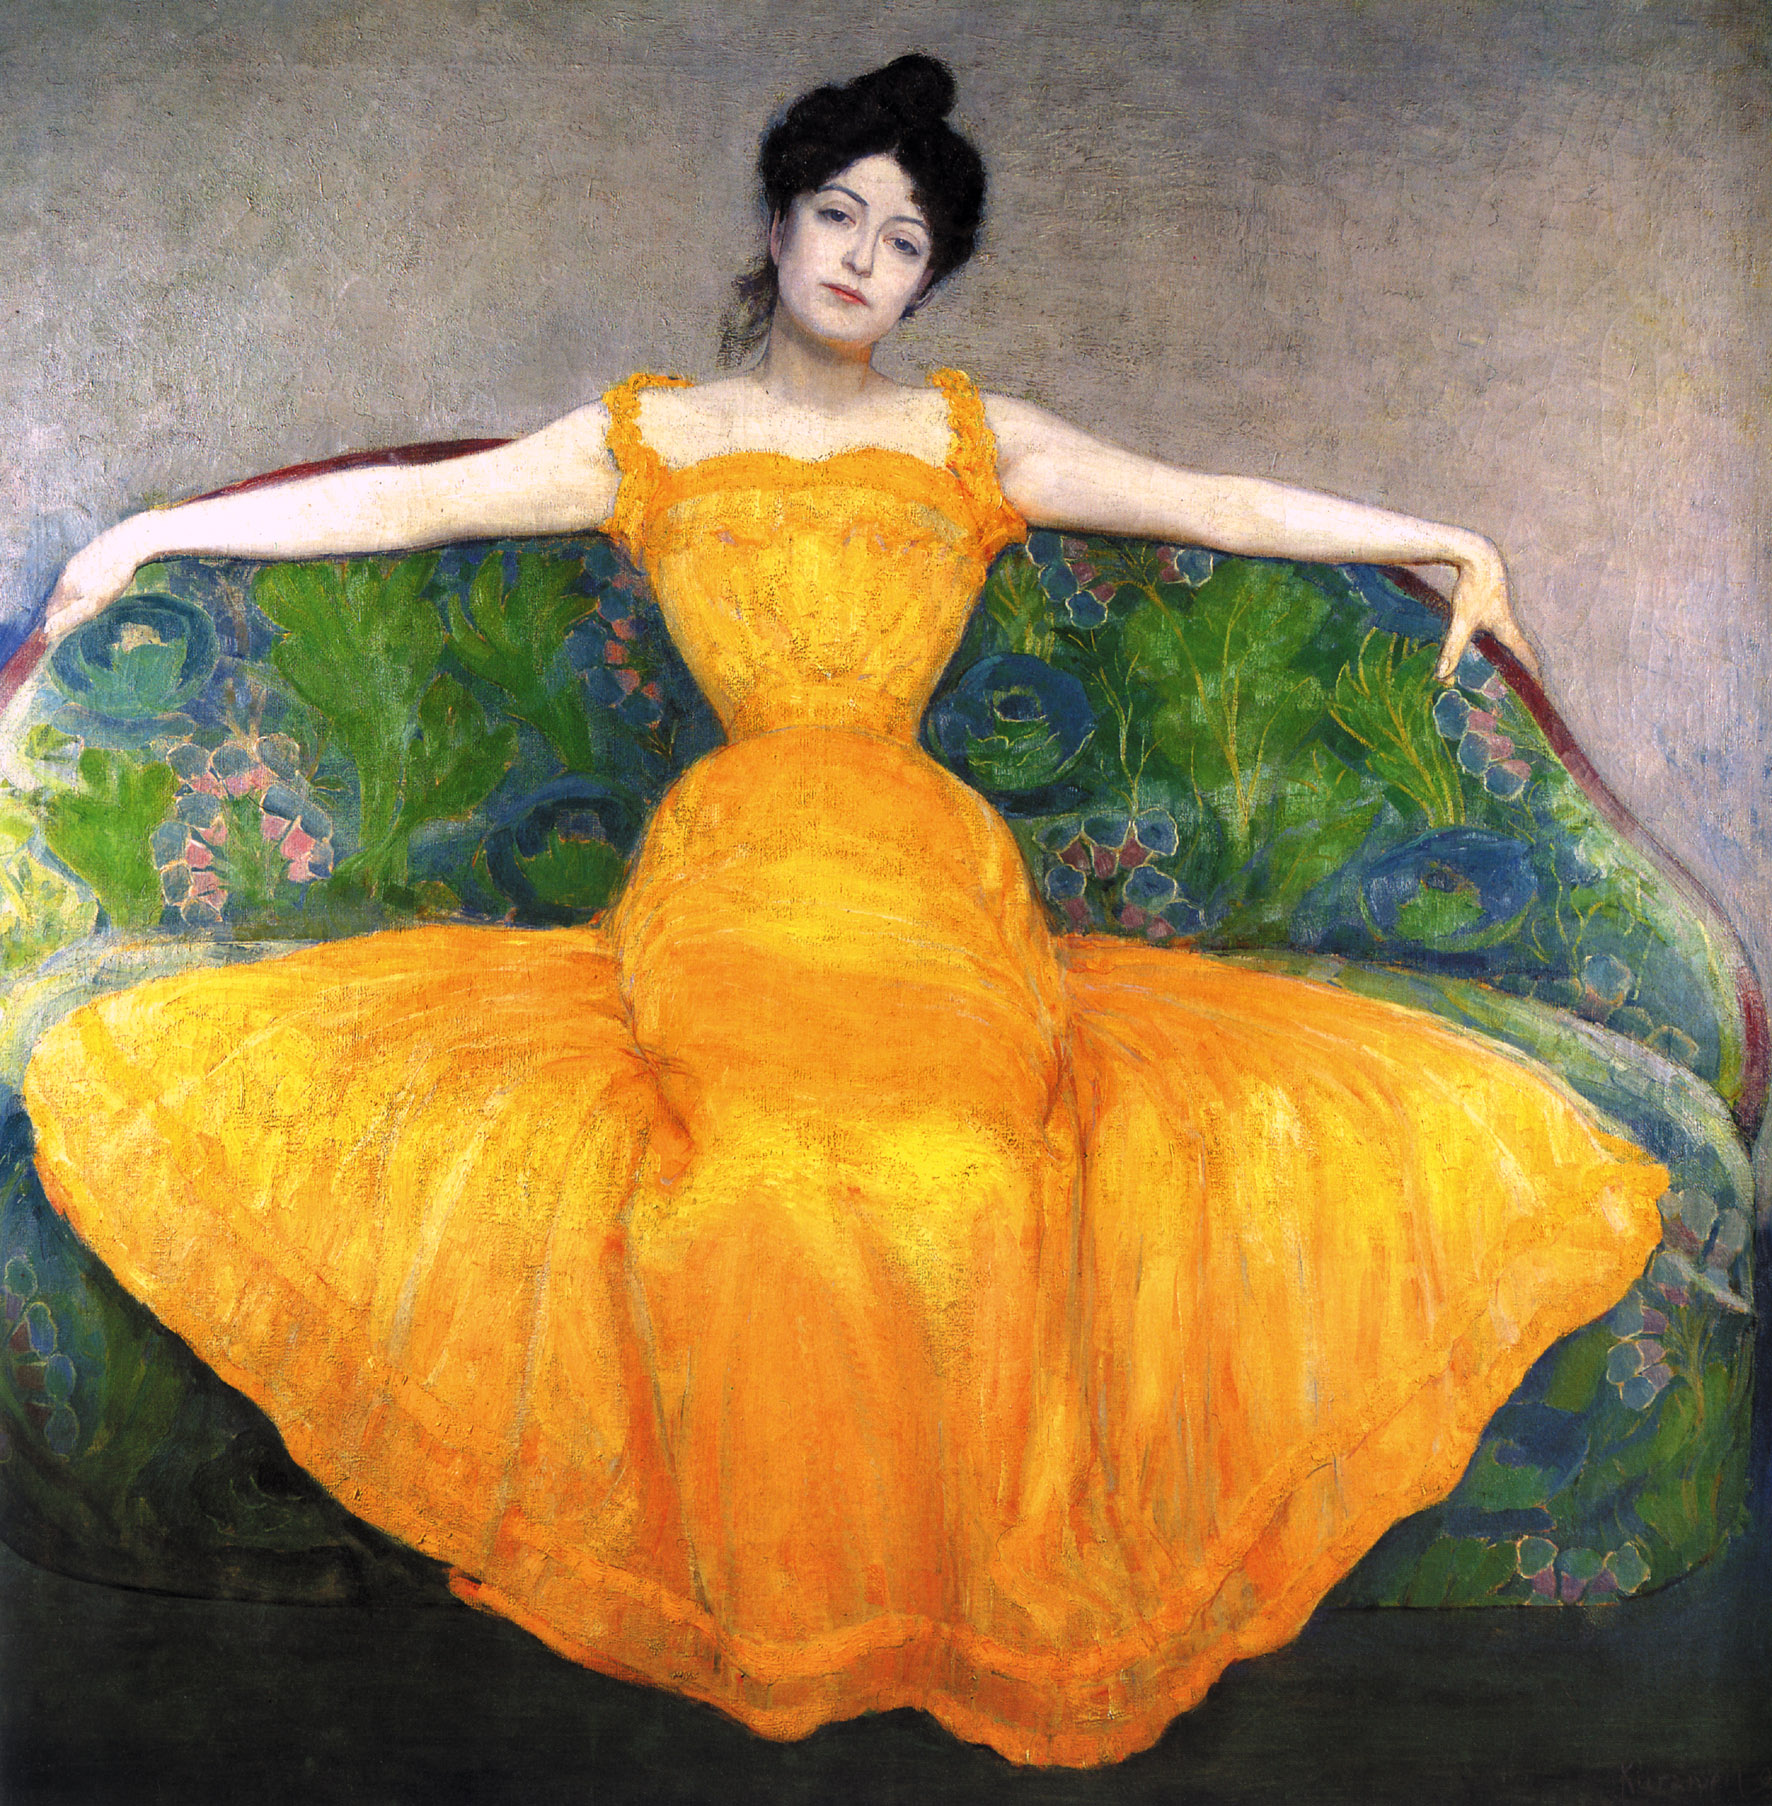 Mujer con vestido amarillo by Max Kurzweil - 1899 Museo de Viena